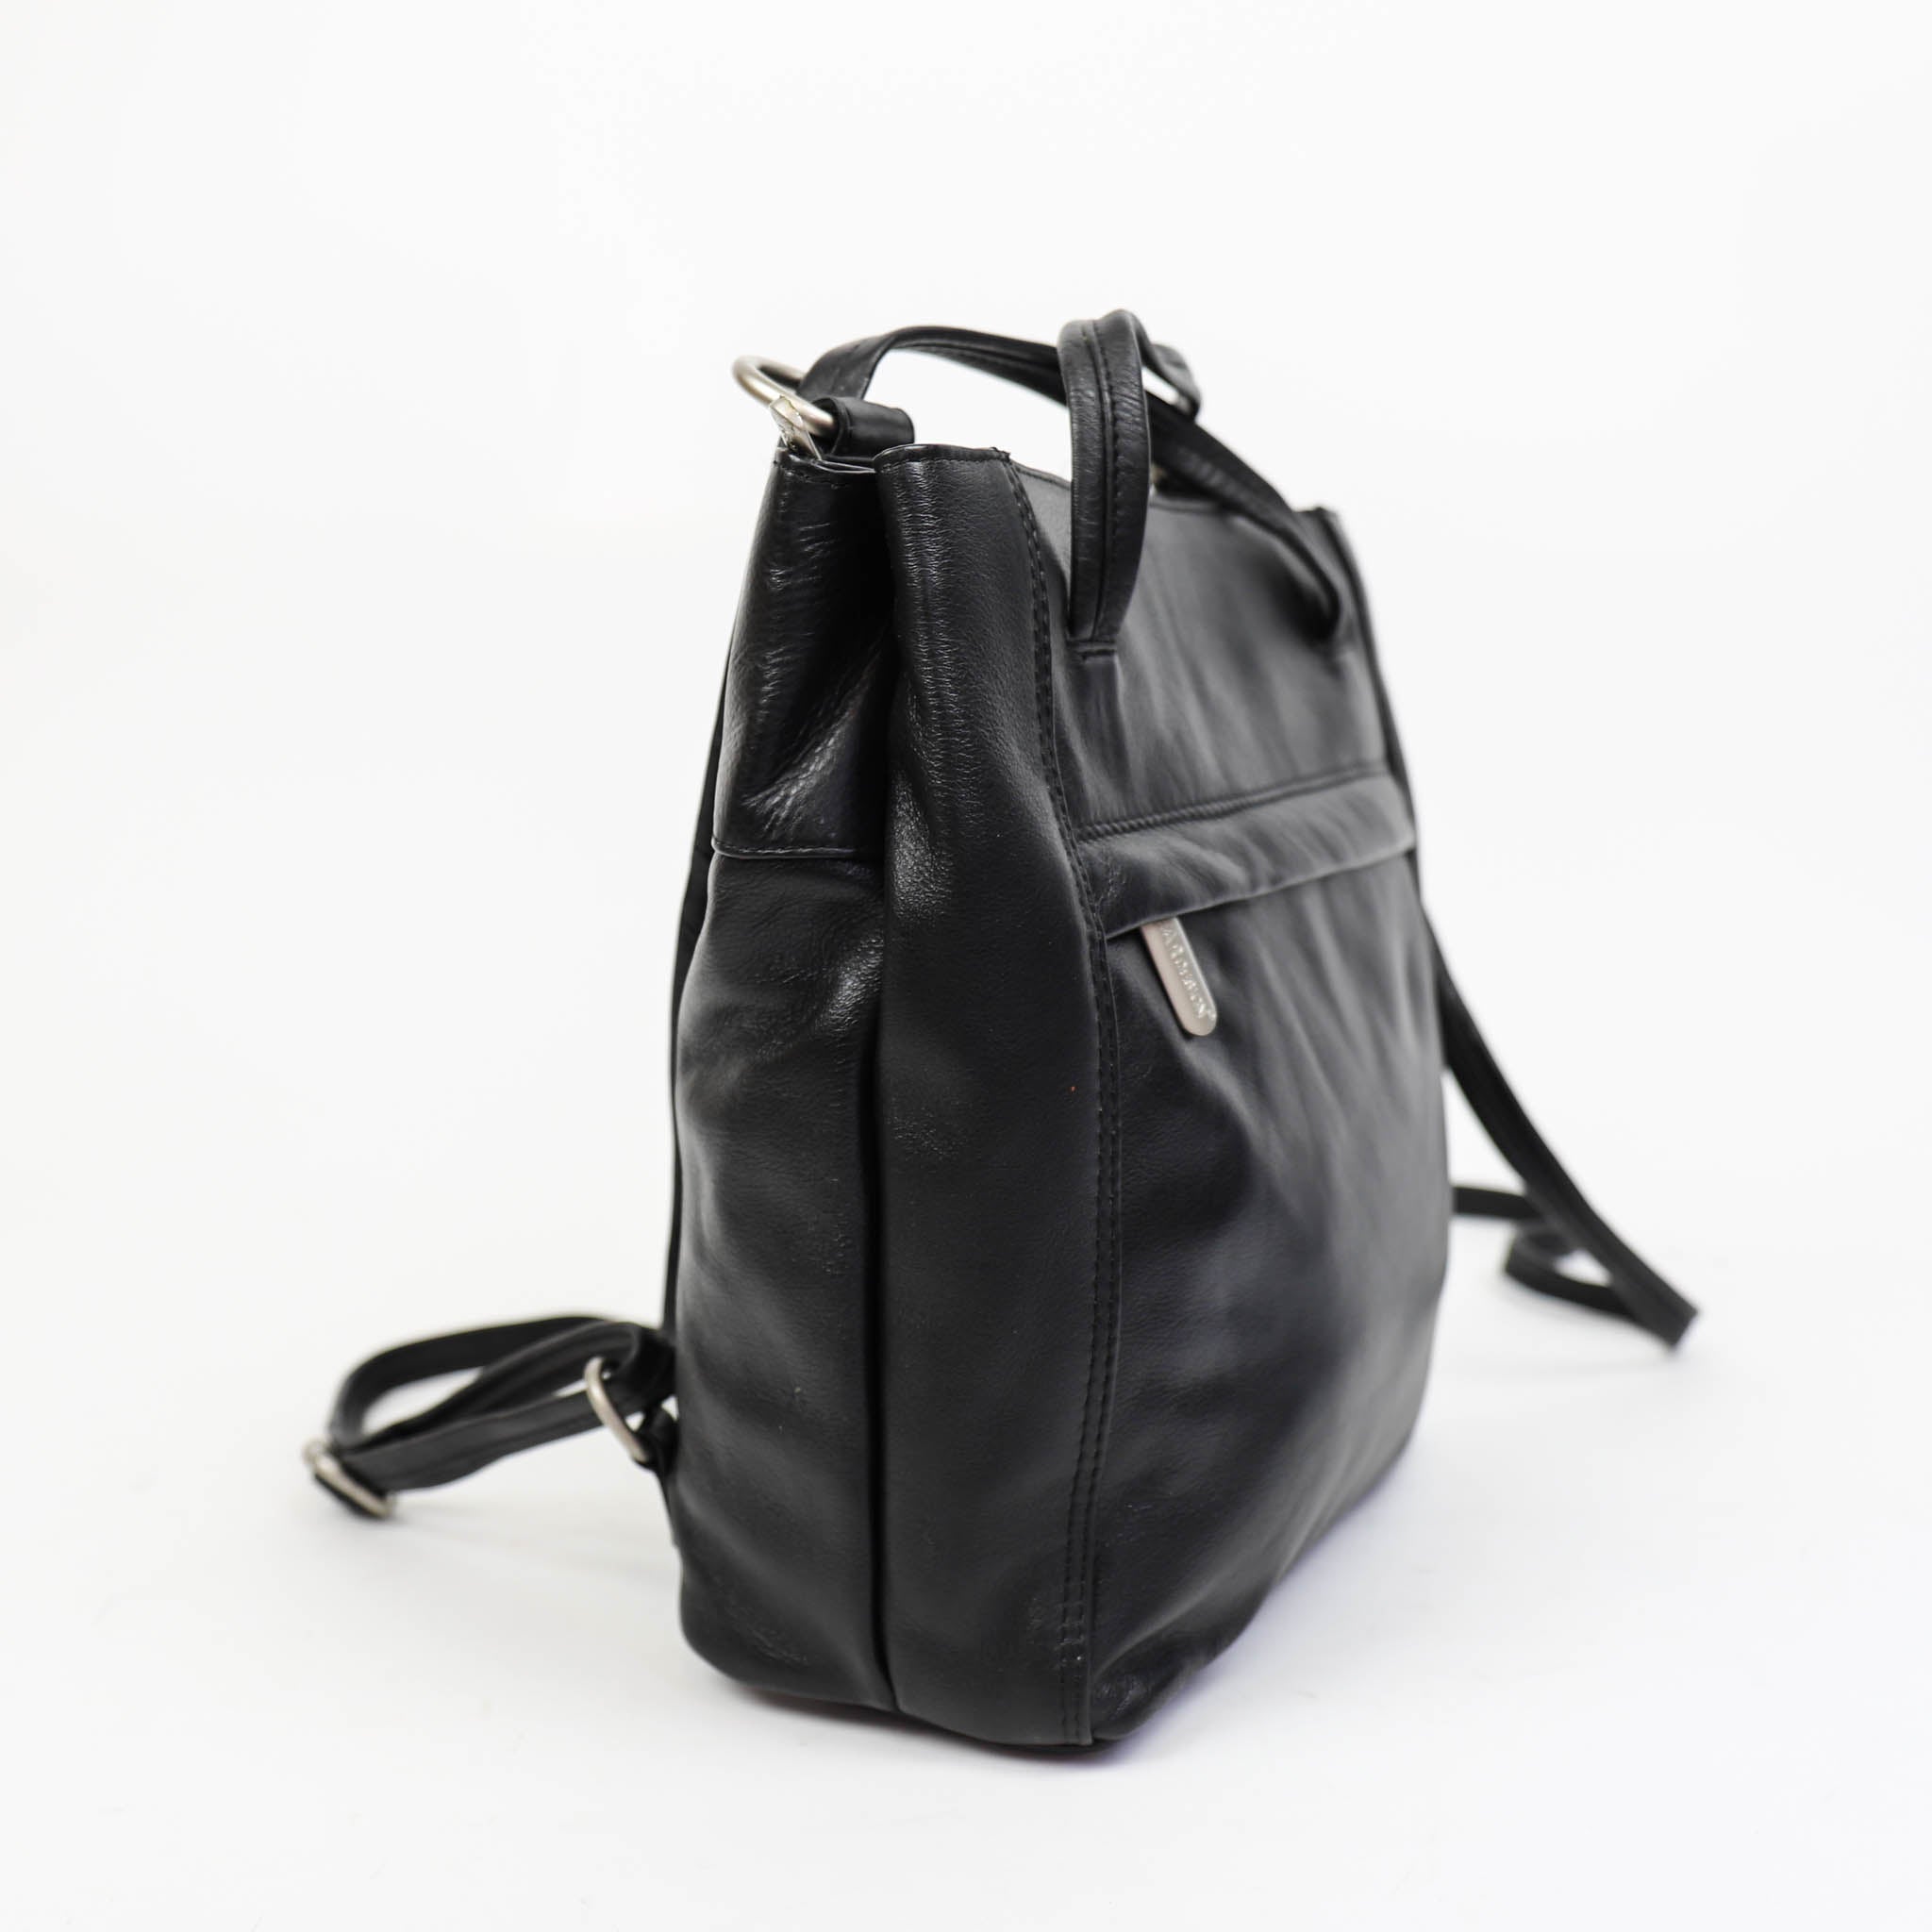 Backpack/shoulder bag 'Sandy' black - B 6029